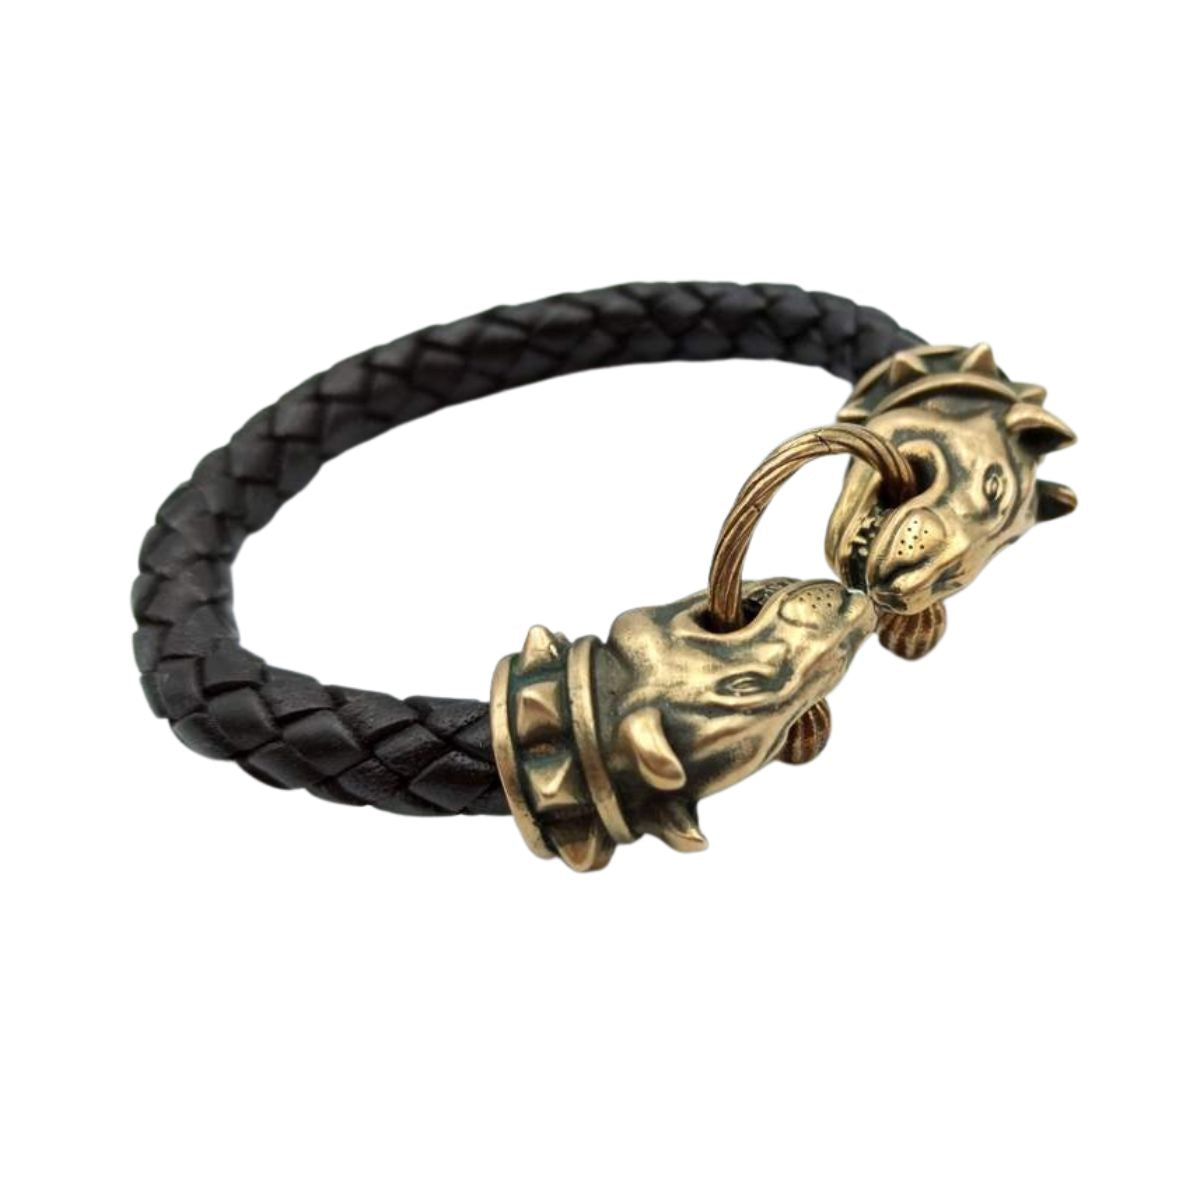 Bull terrier leather bracelet   